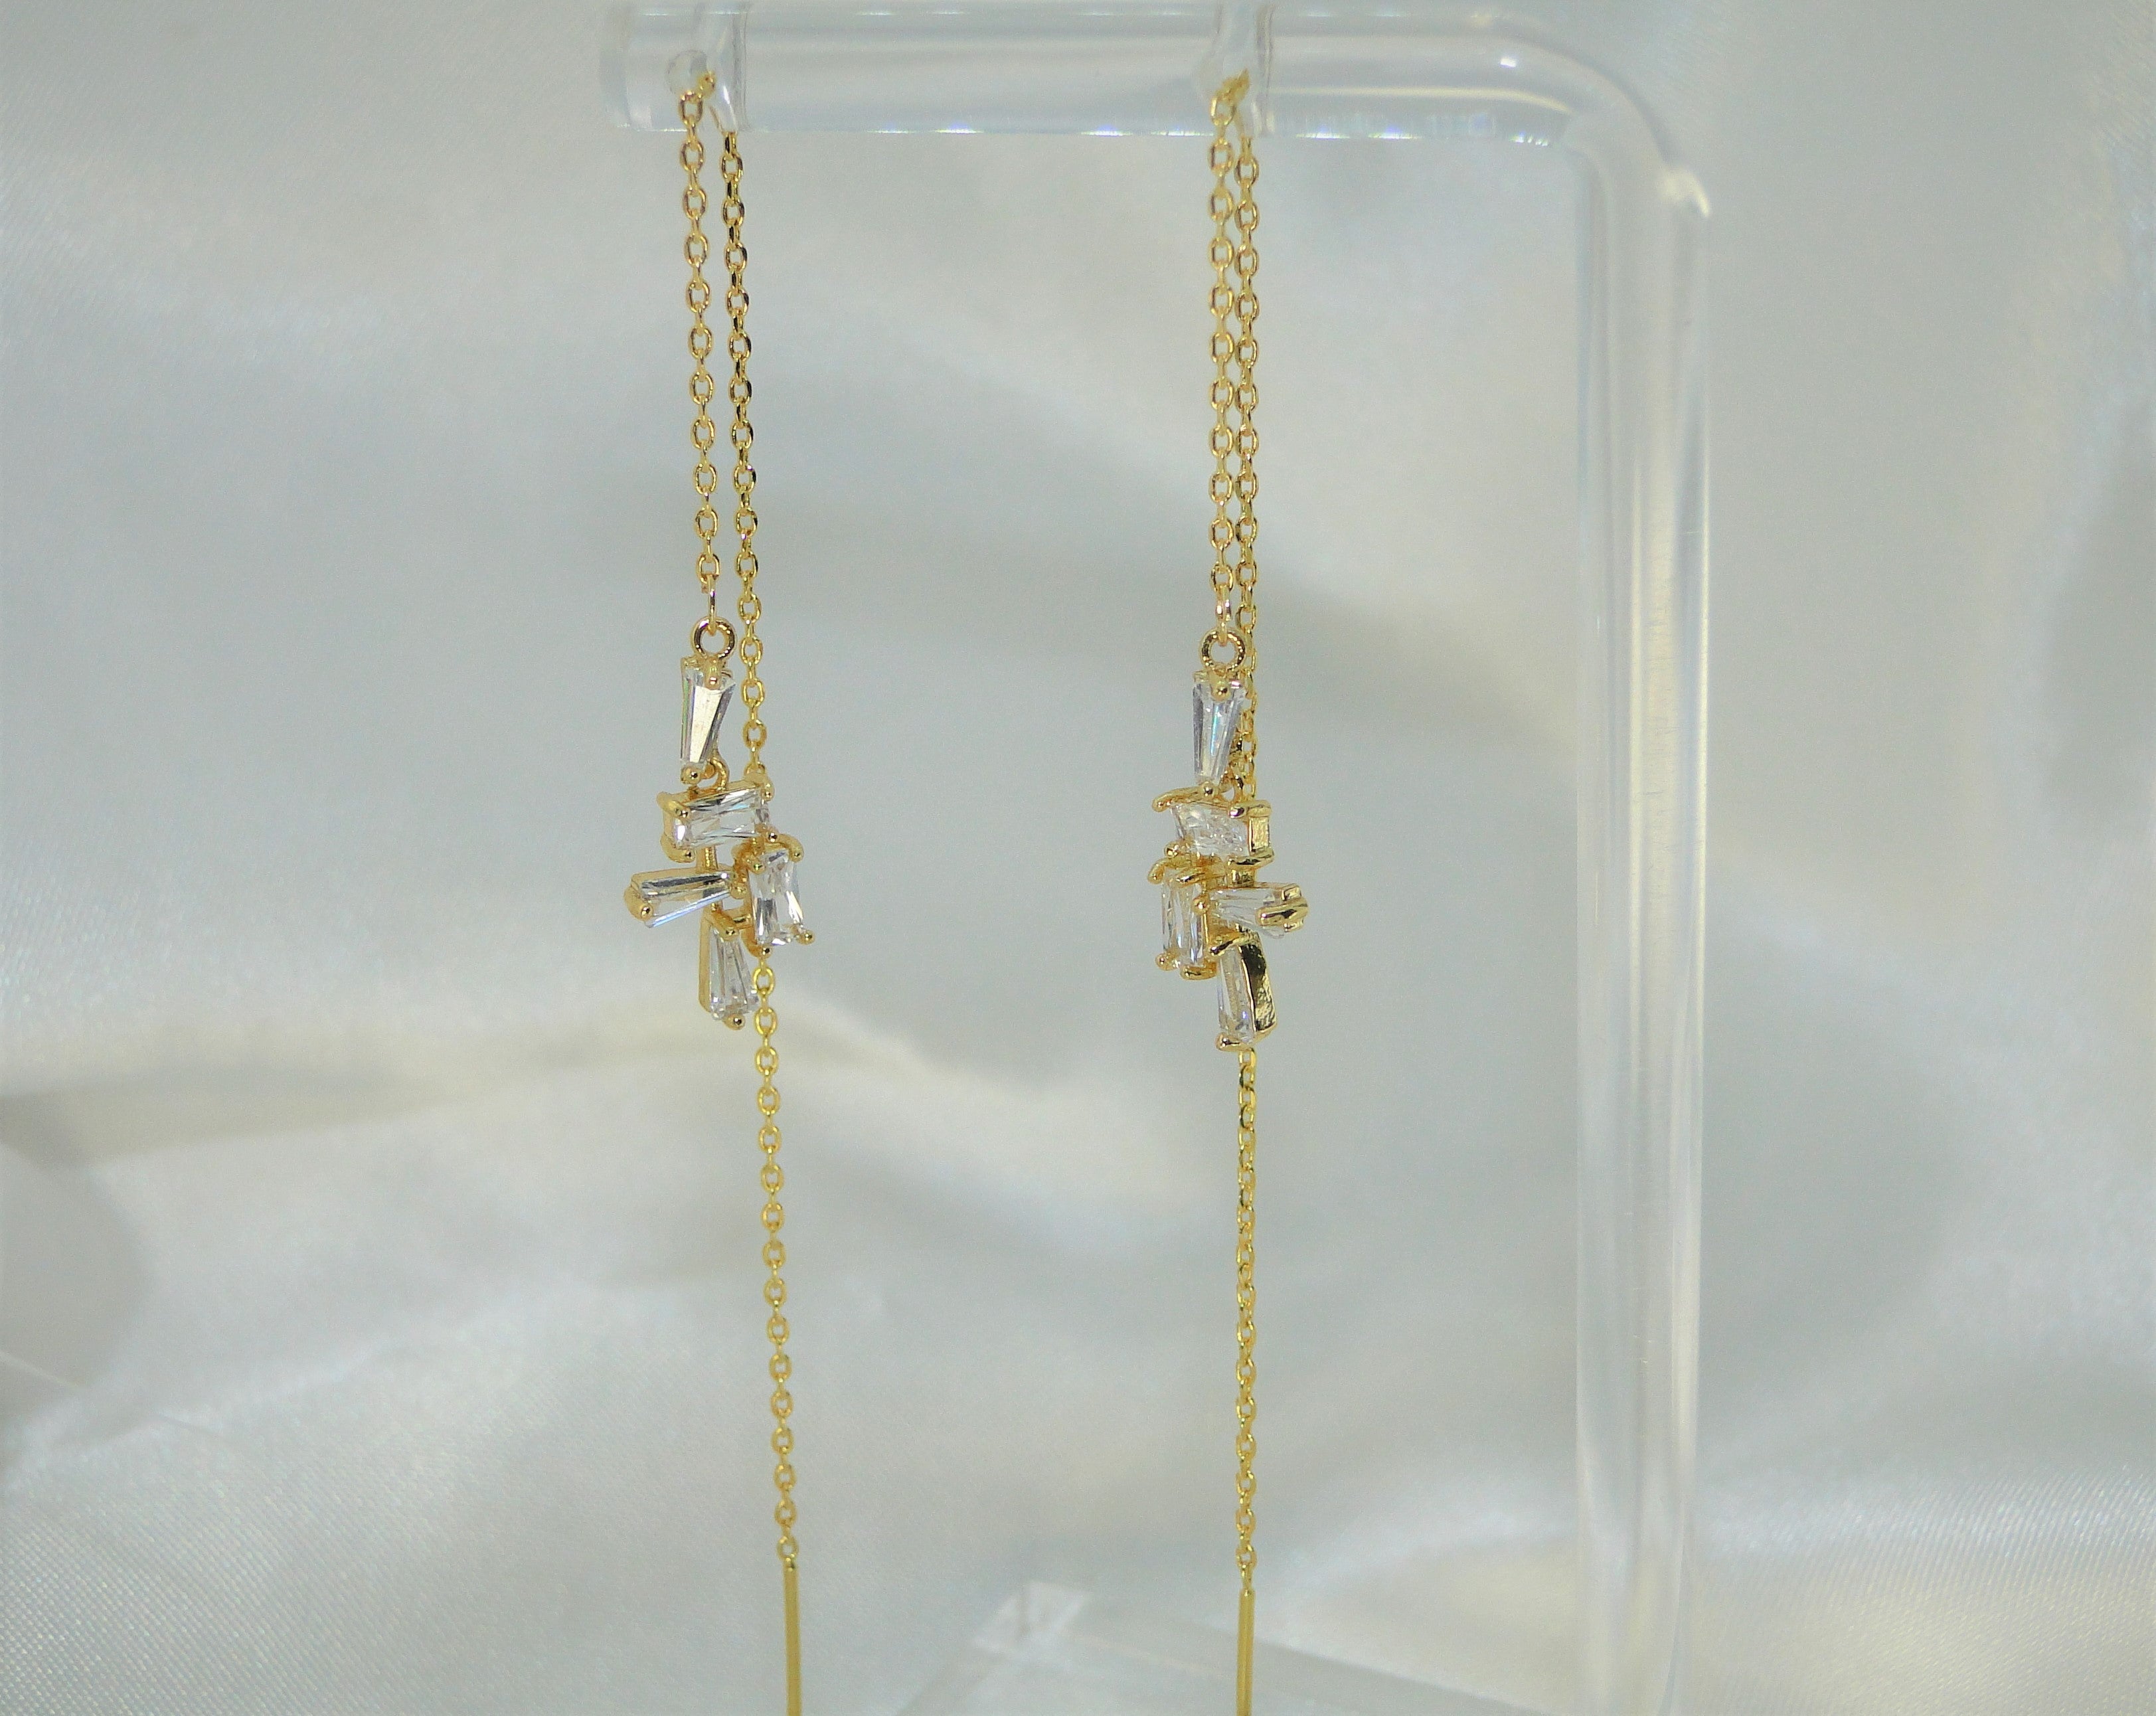 Gold Threader Earrings - Long Chain Earrings 14K Gold Filled